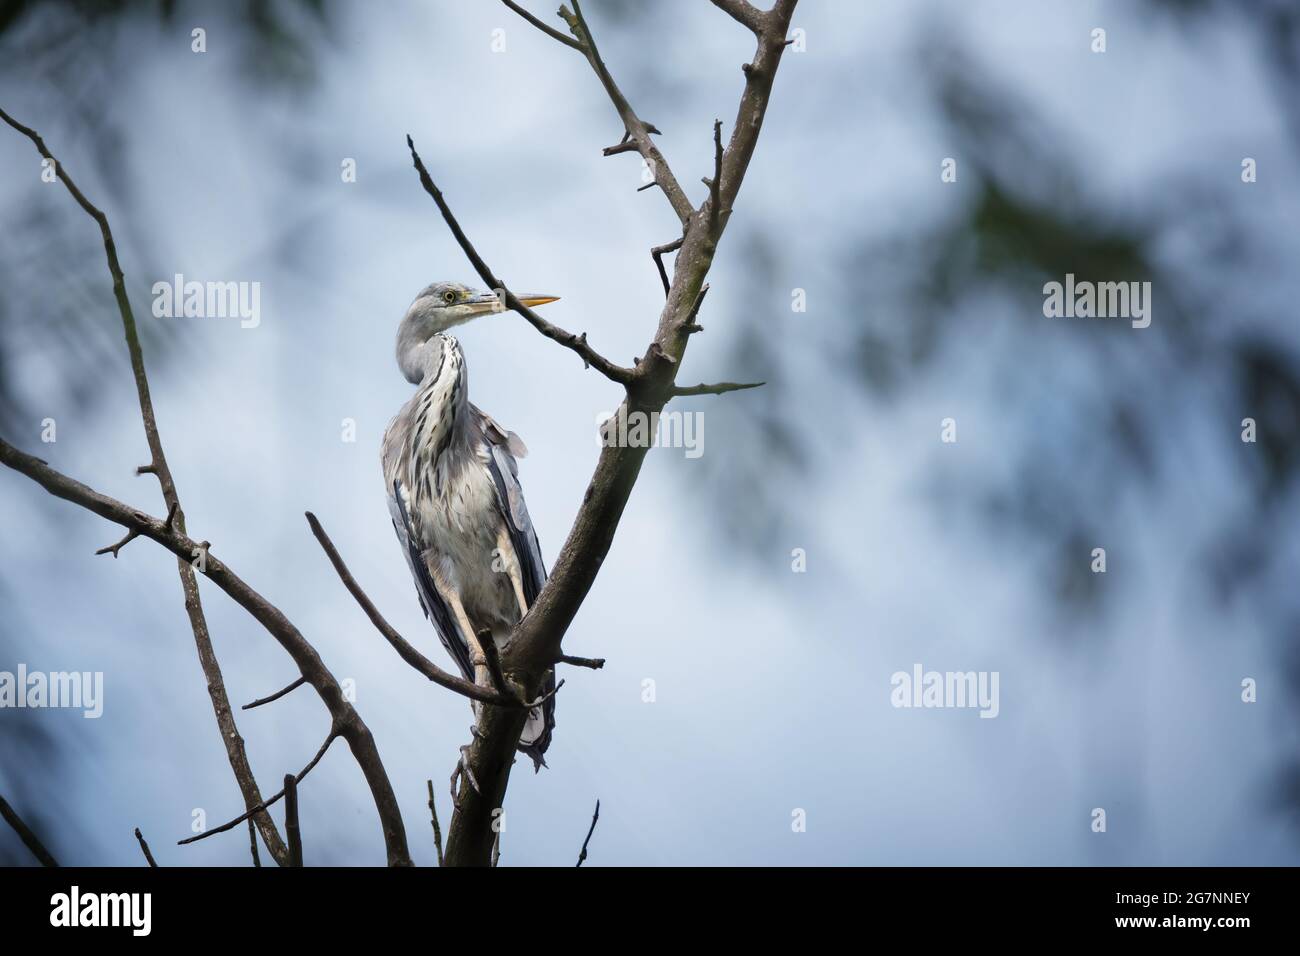 Grauer Reiher-Vogel, der auf einem Ast am blauen Himmel sitzt Stockfoto